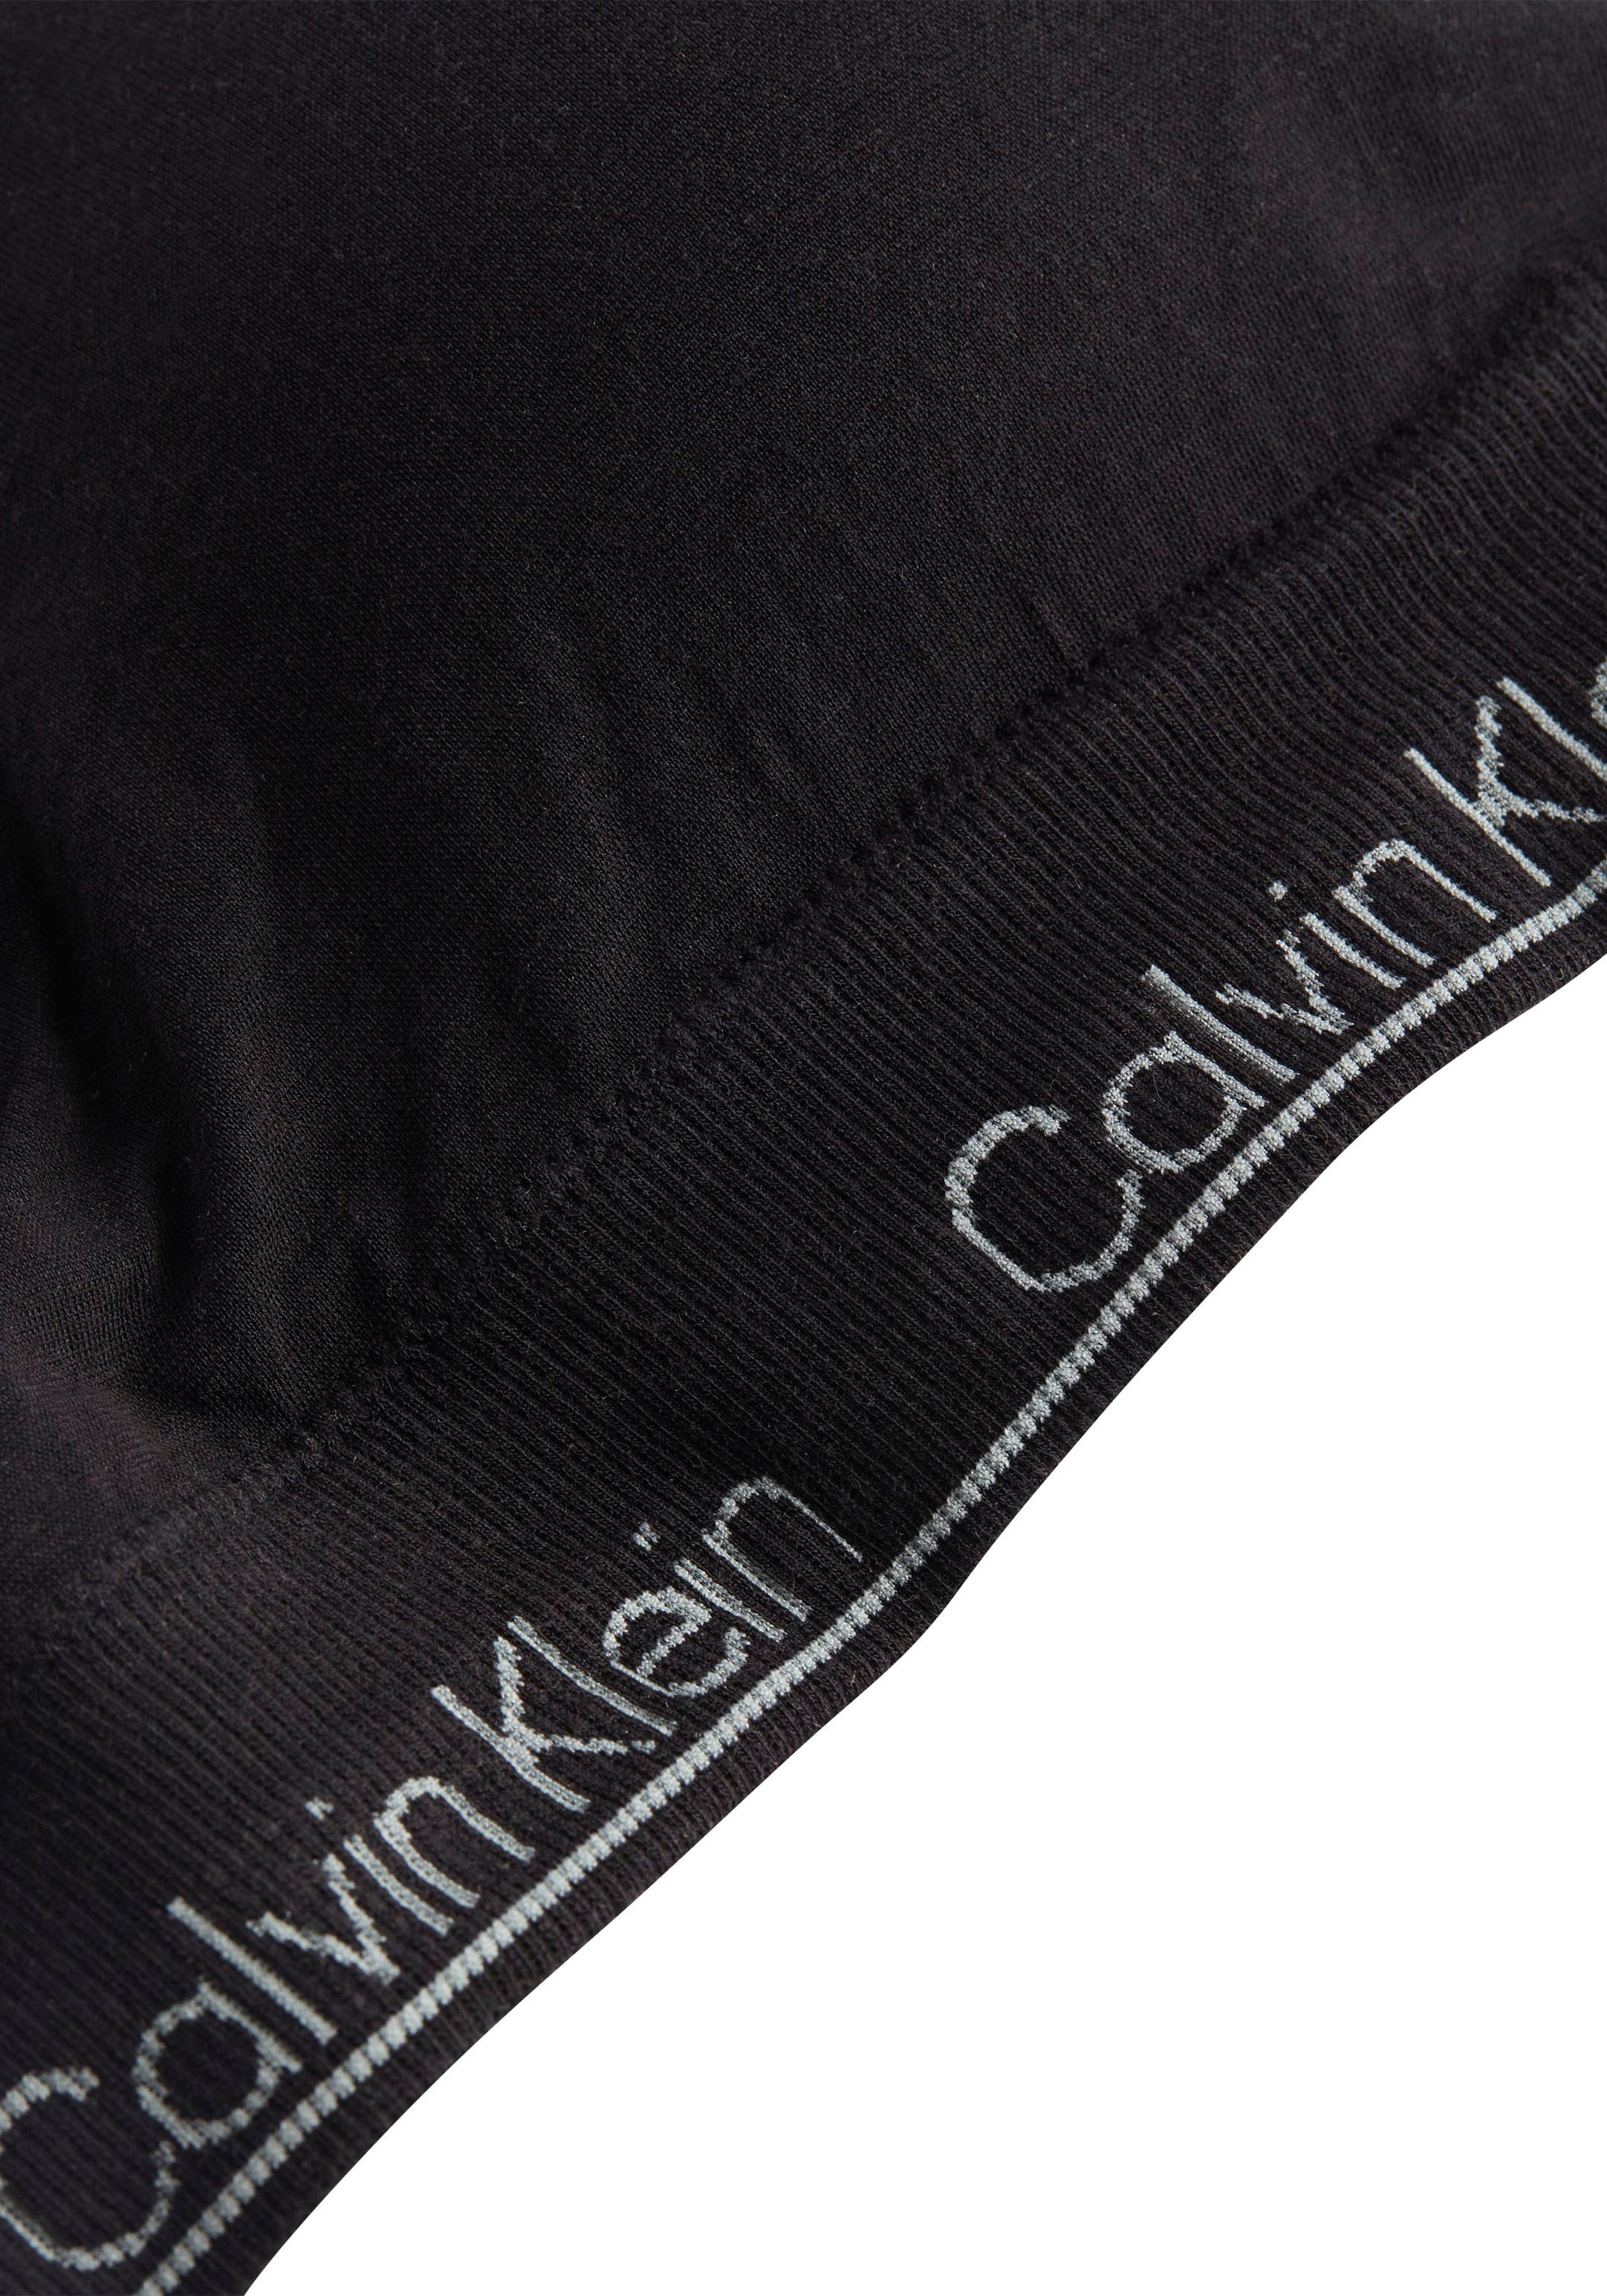 Calvin Klein Triangel-BH »LGHT LINED TRIANGLE«, mit CK-Logoschriftzug  online kaufen bei Jelmoli-Versand Schweiz